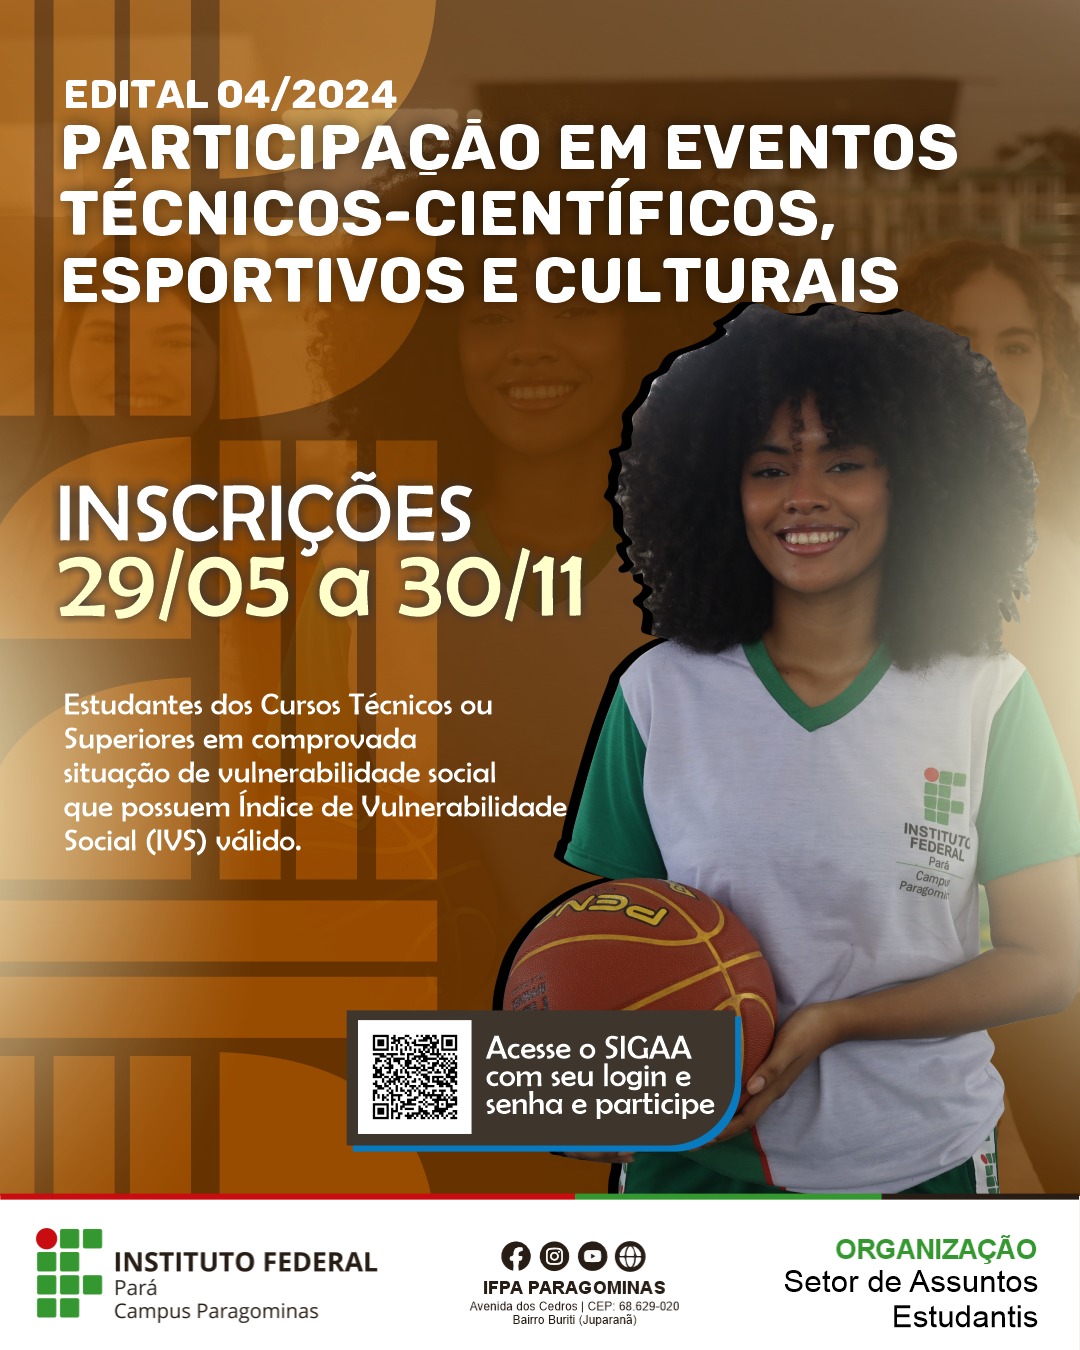 Edital nº 04/2024 - Participação em eventos técnicos-científicos, esportivos e culturais